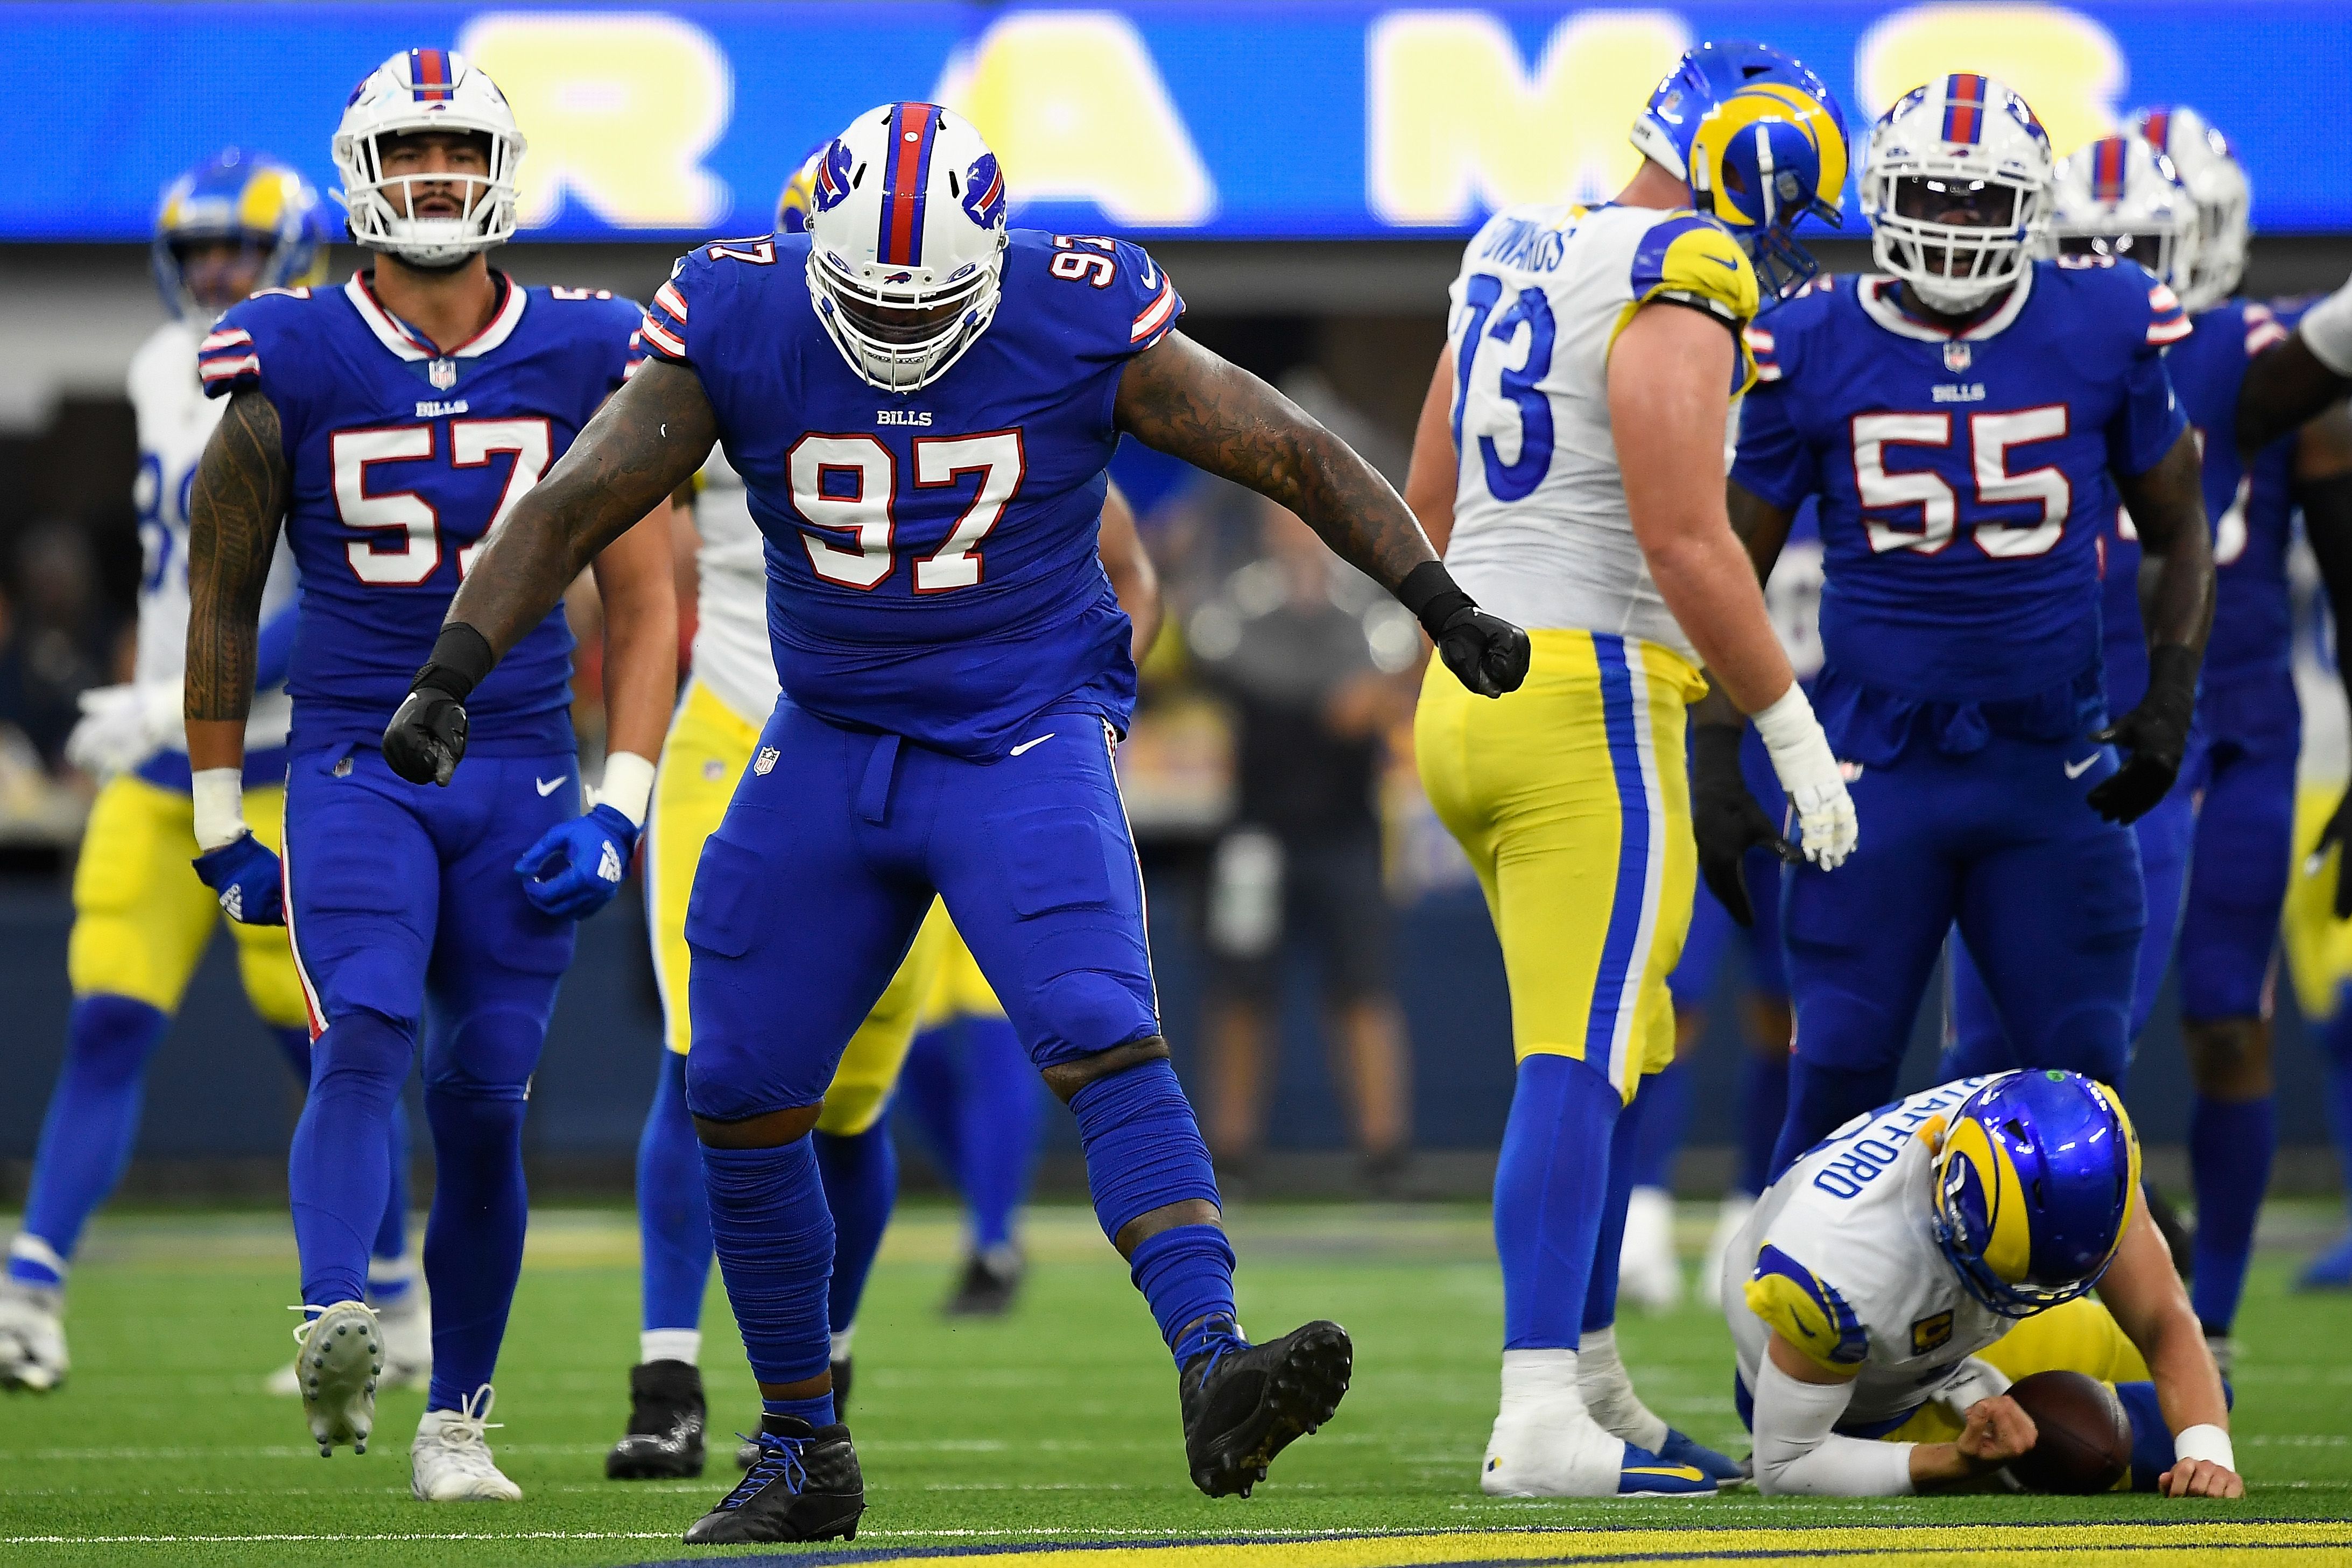 Josh Allen leads Buffalo Bills to victory over LA Rams in NFL season opener, NFL